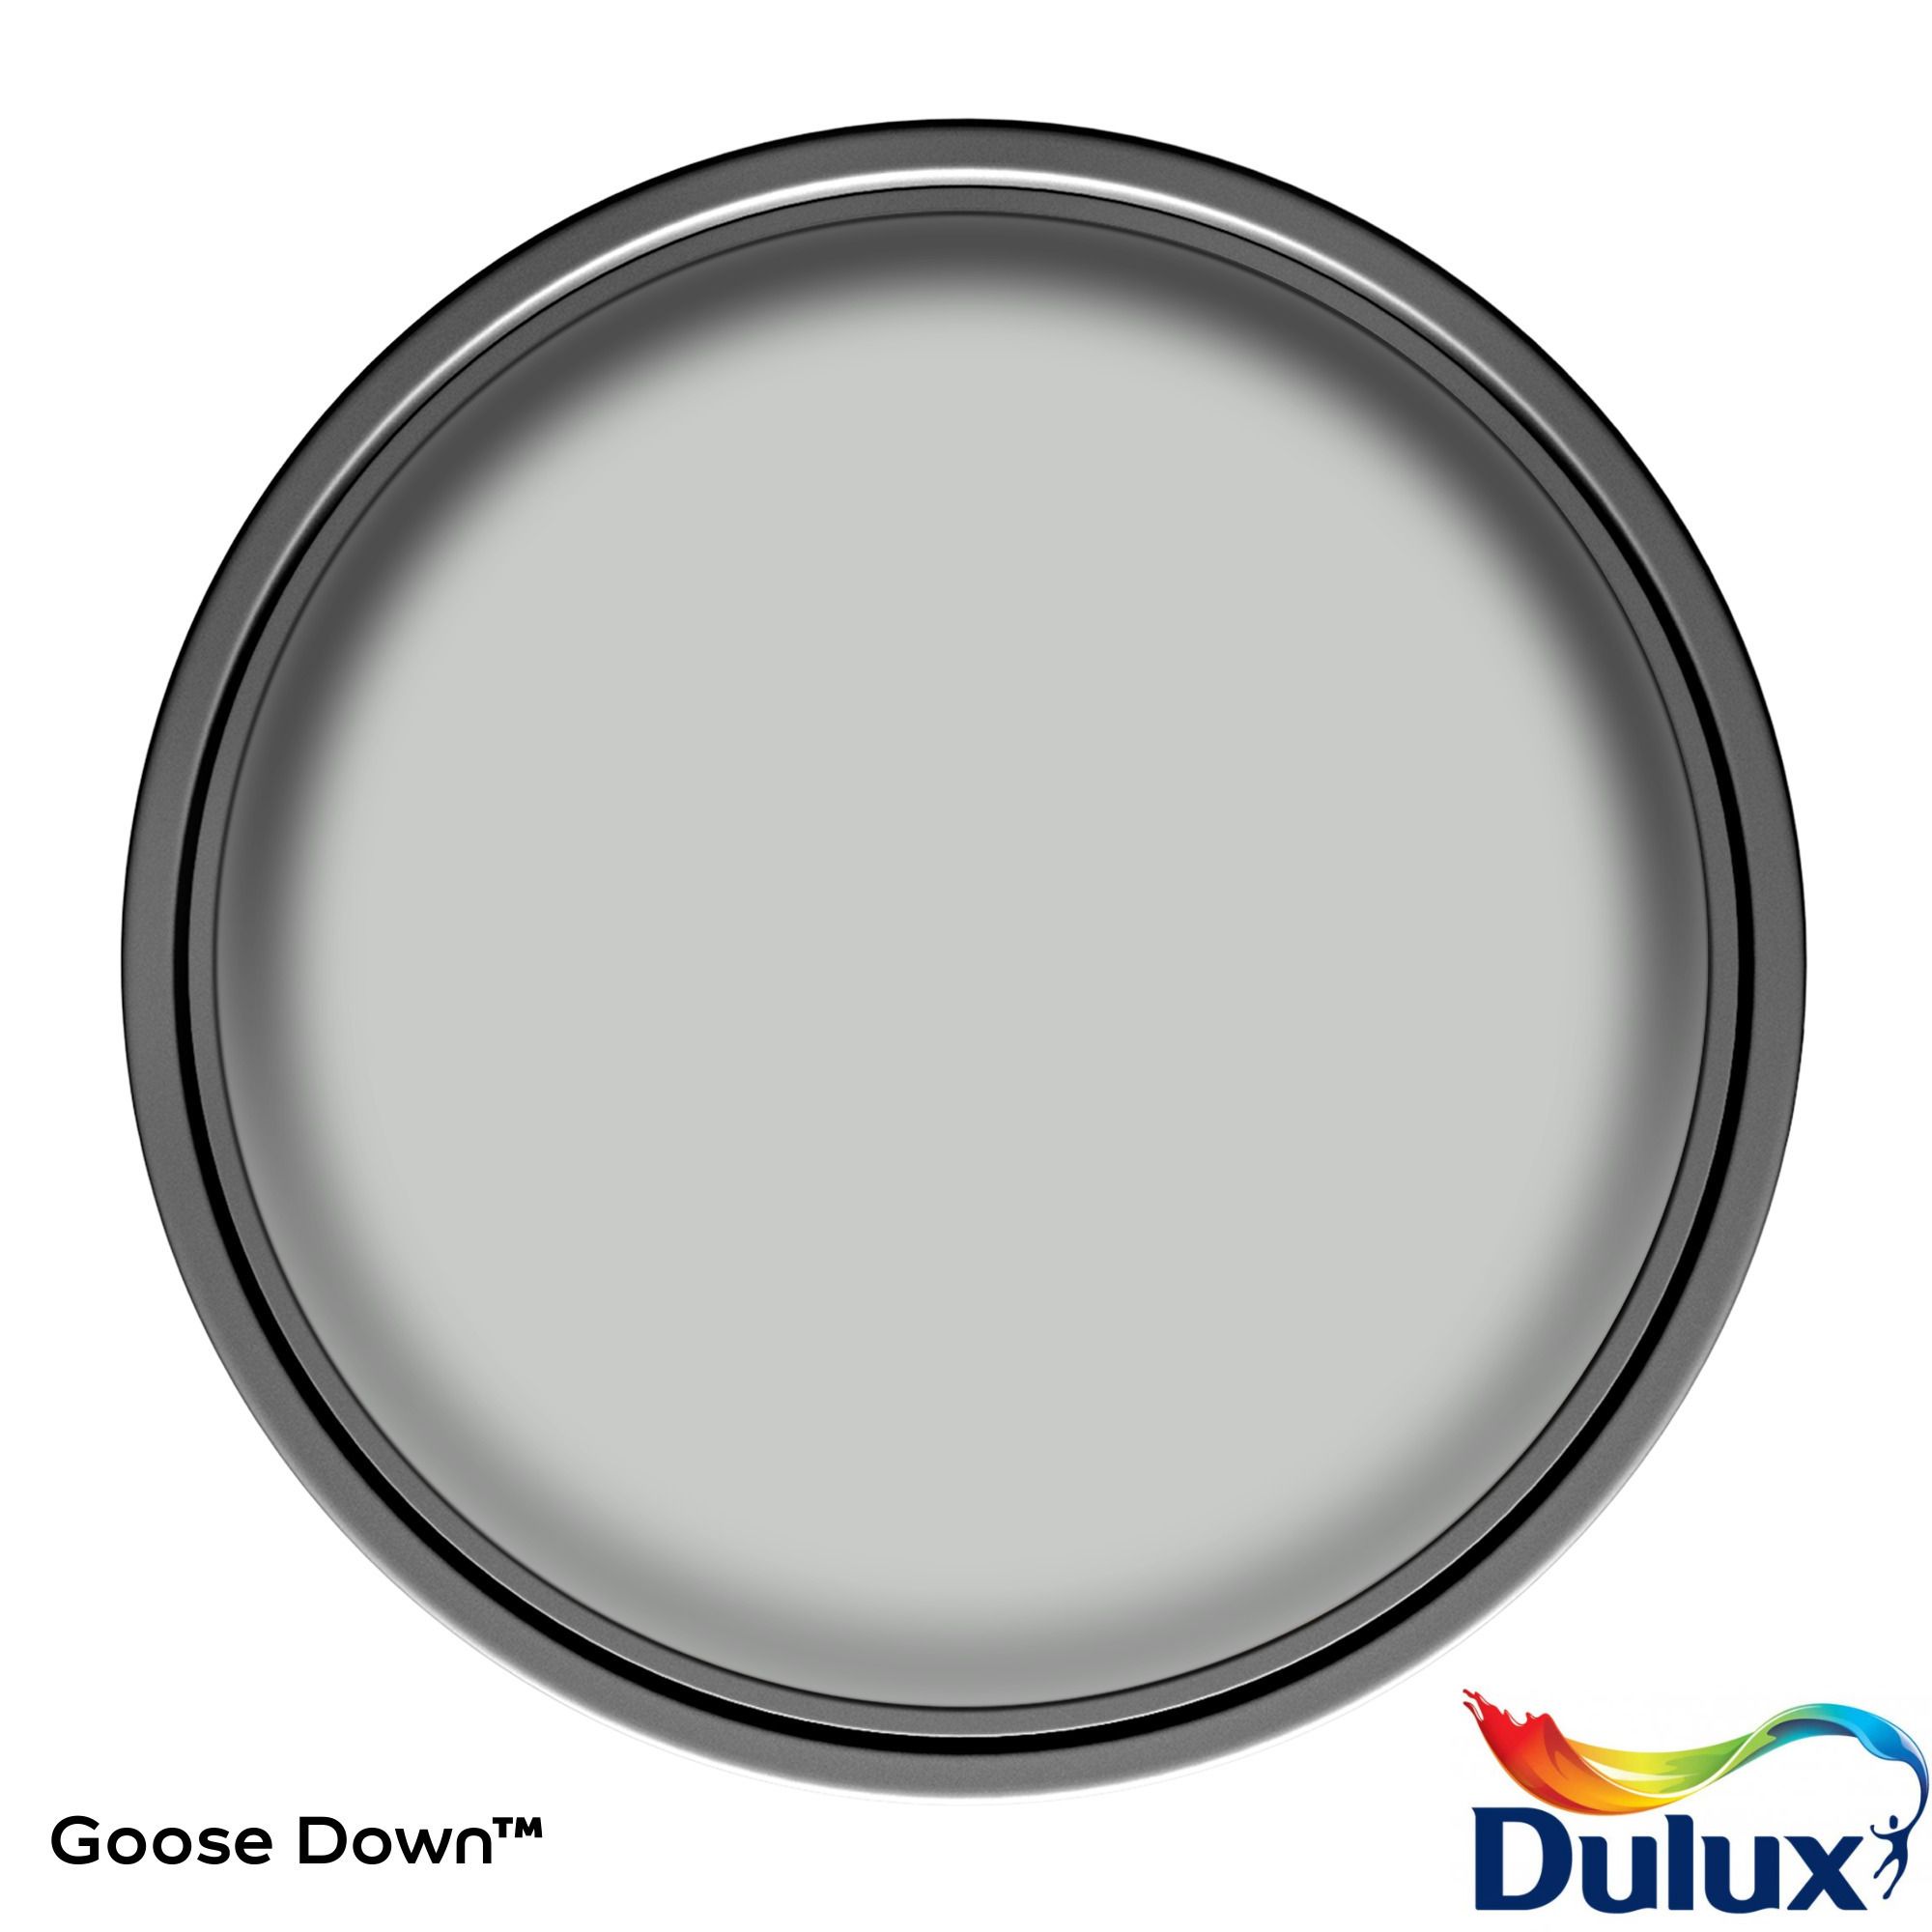 Dulux One coat Goose down Matt Emulsion paint, 2.5L